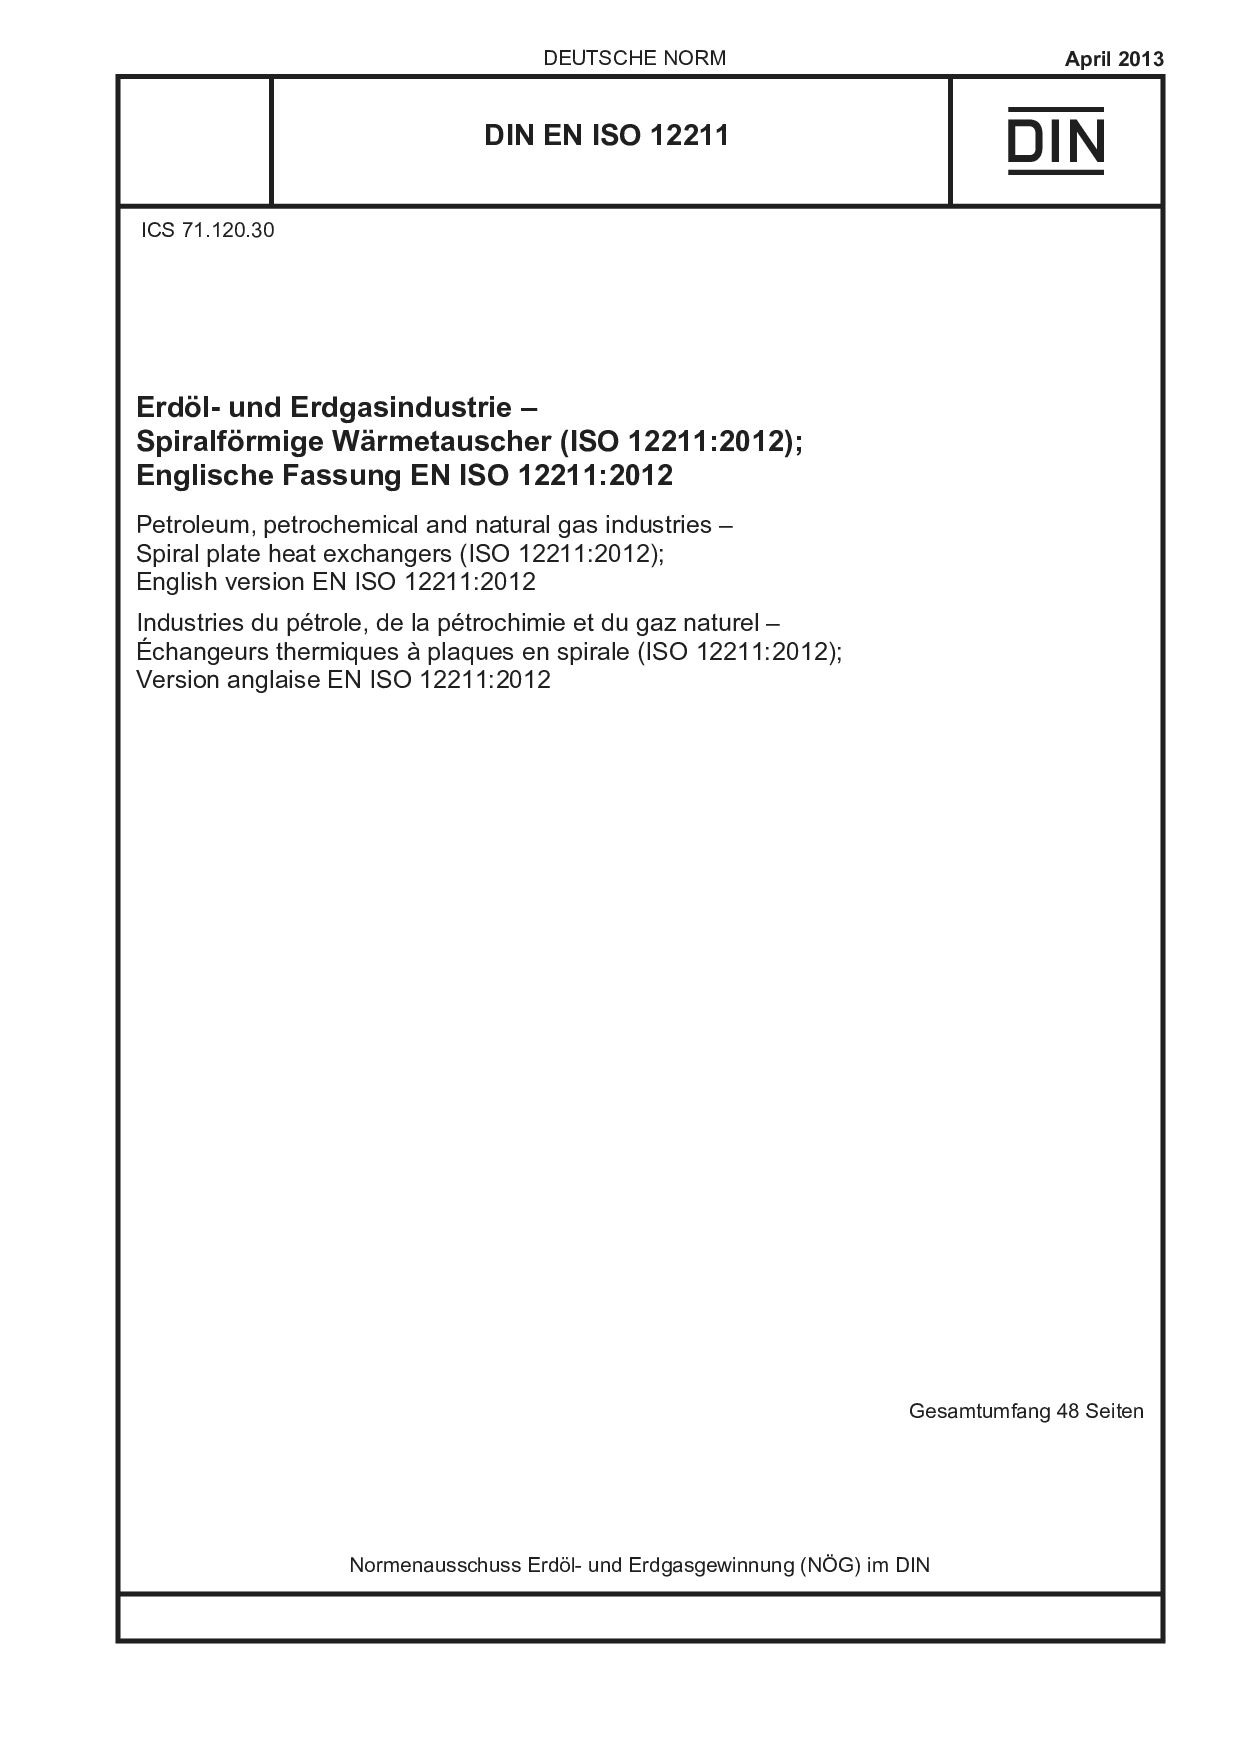 DIN EN ISO 12211:2013-04